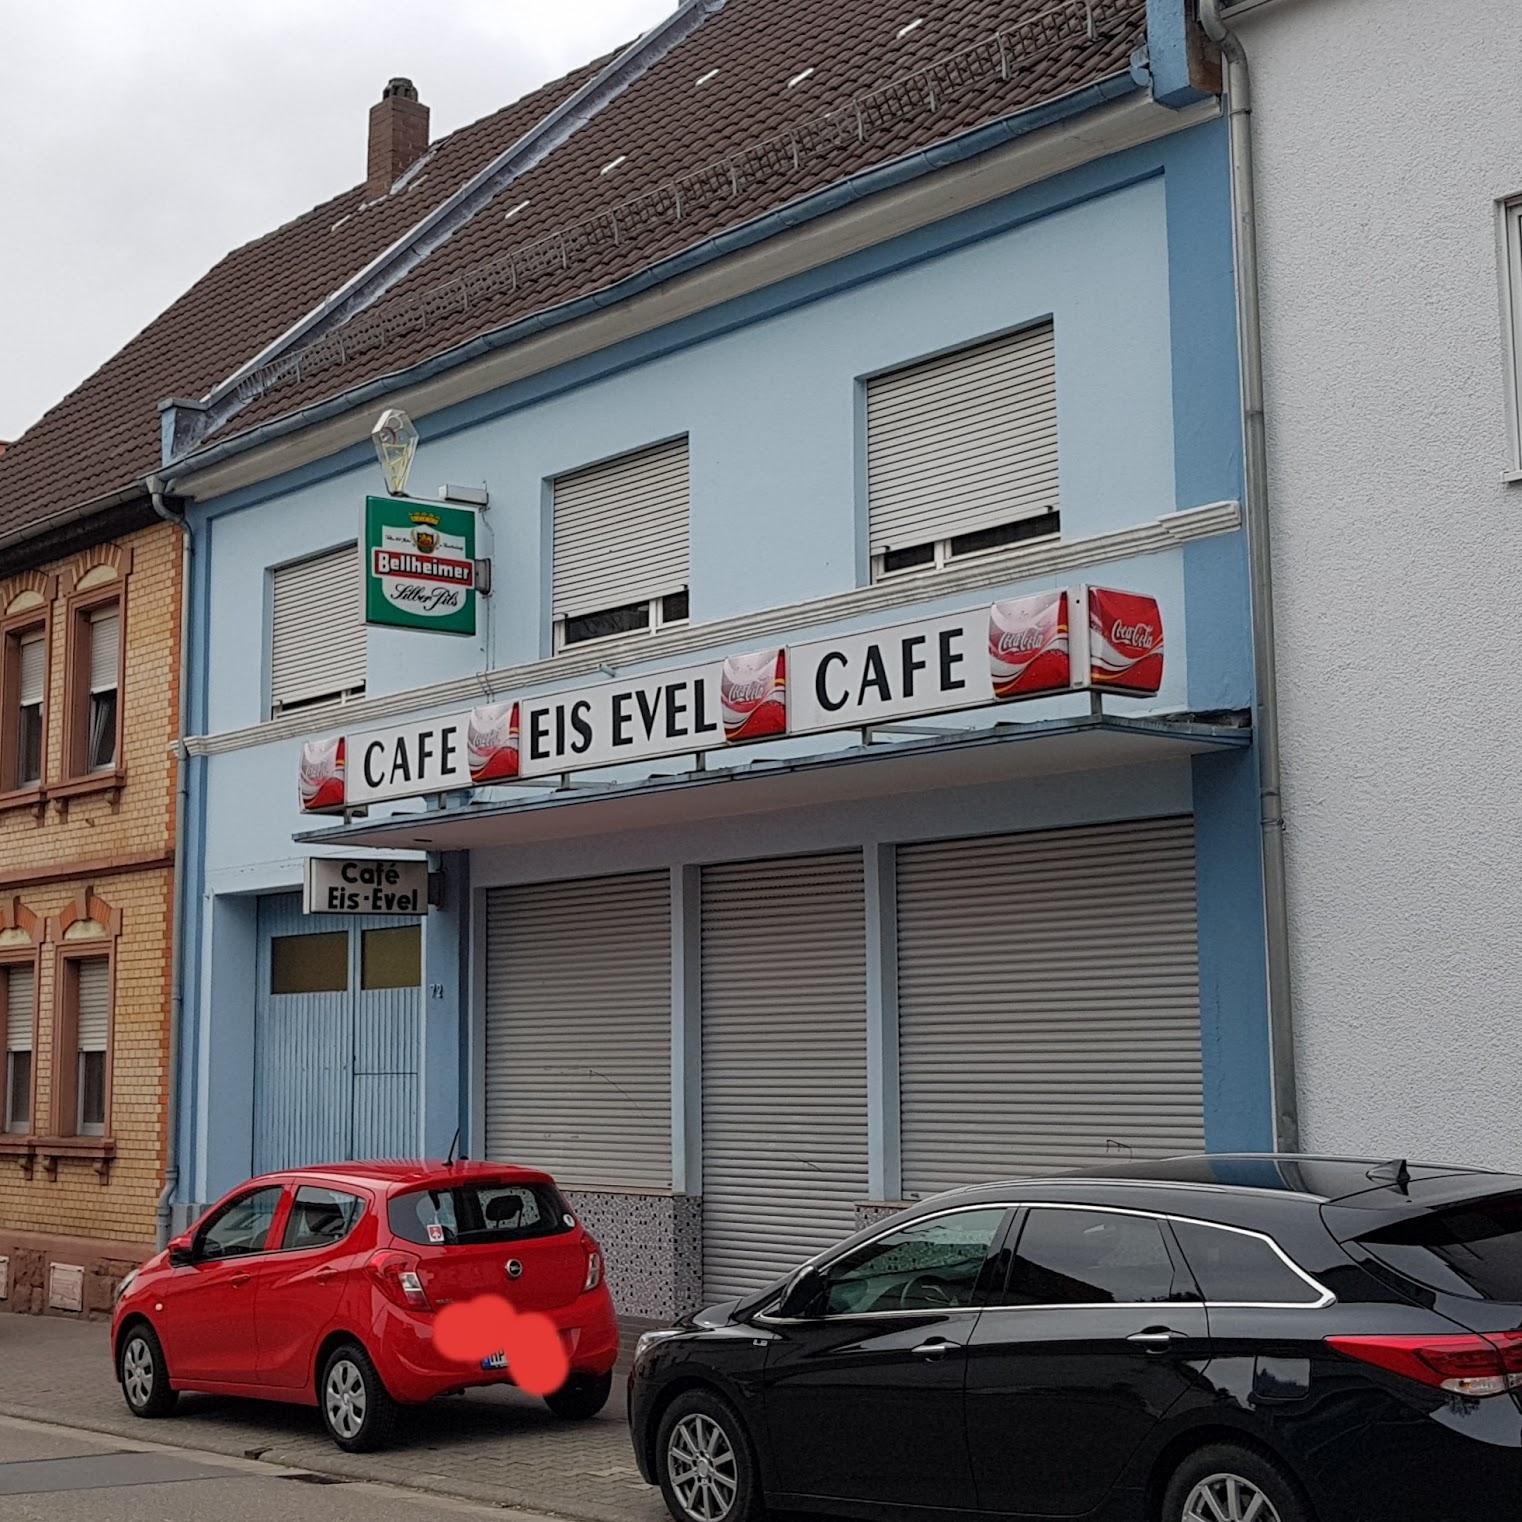 Restaurant "Eiscafe Evel" in Viernheim